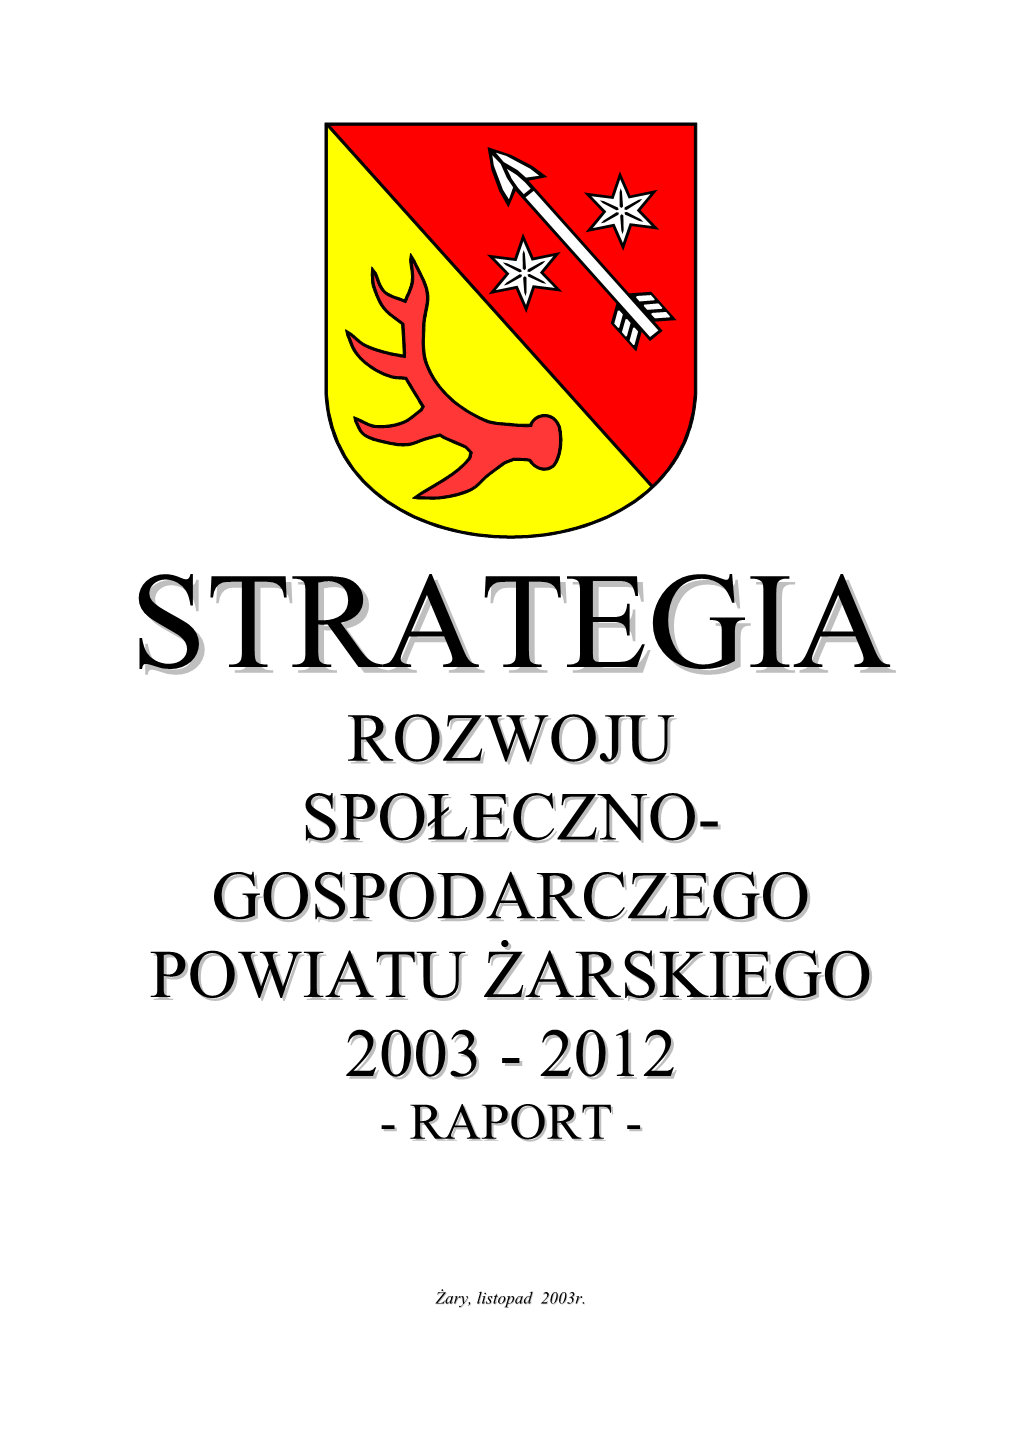 Gospodarczego Powiatu Żarskiego 2003